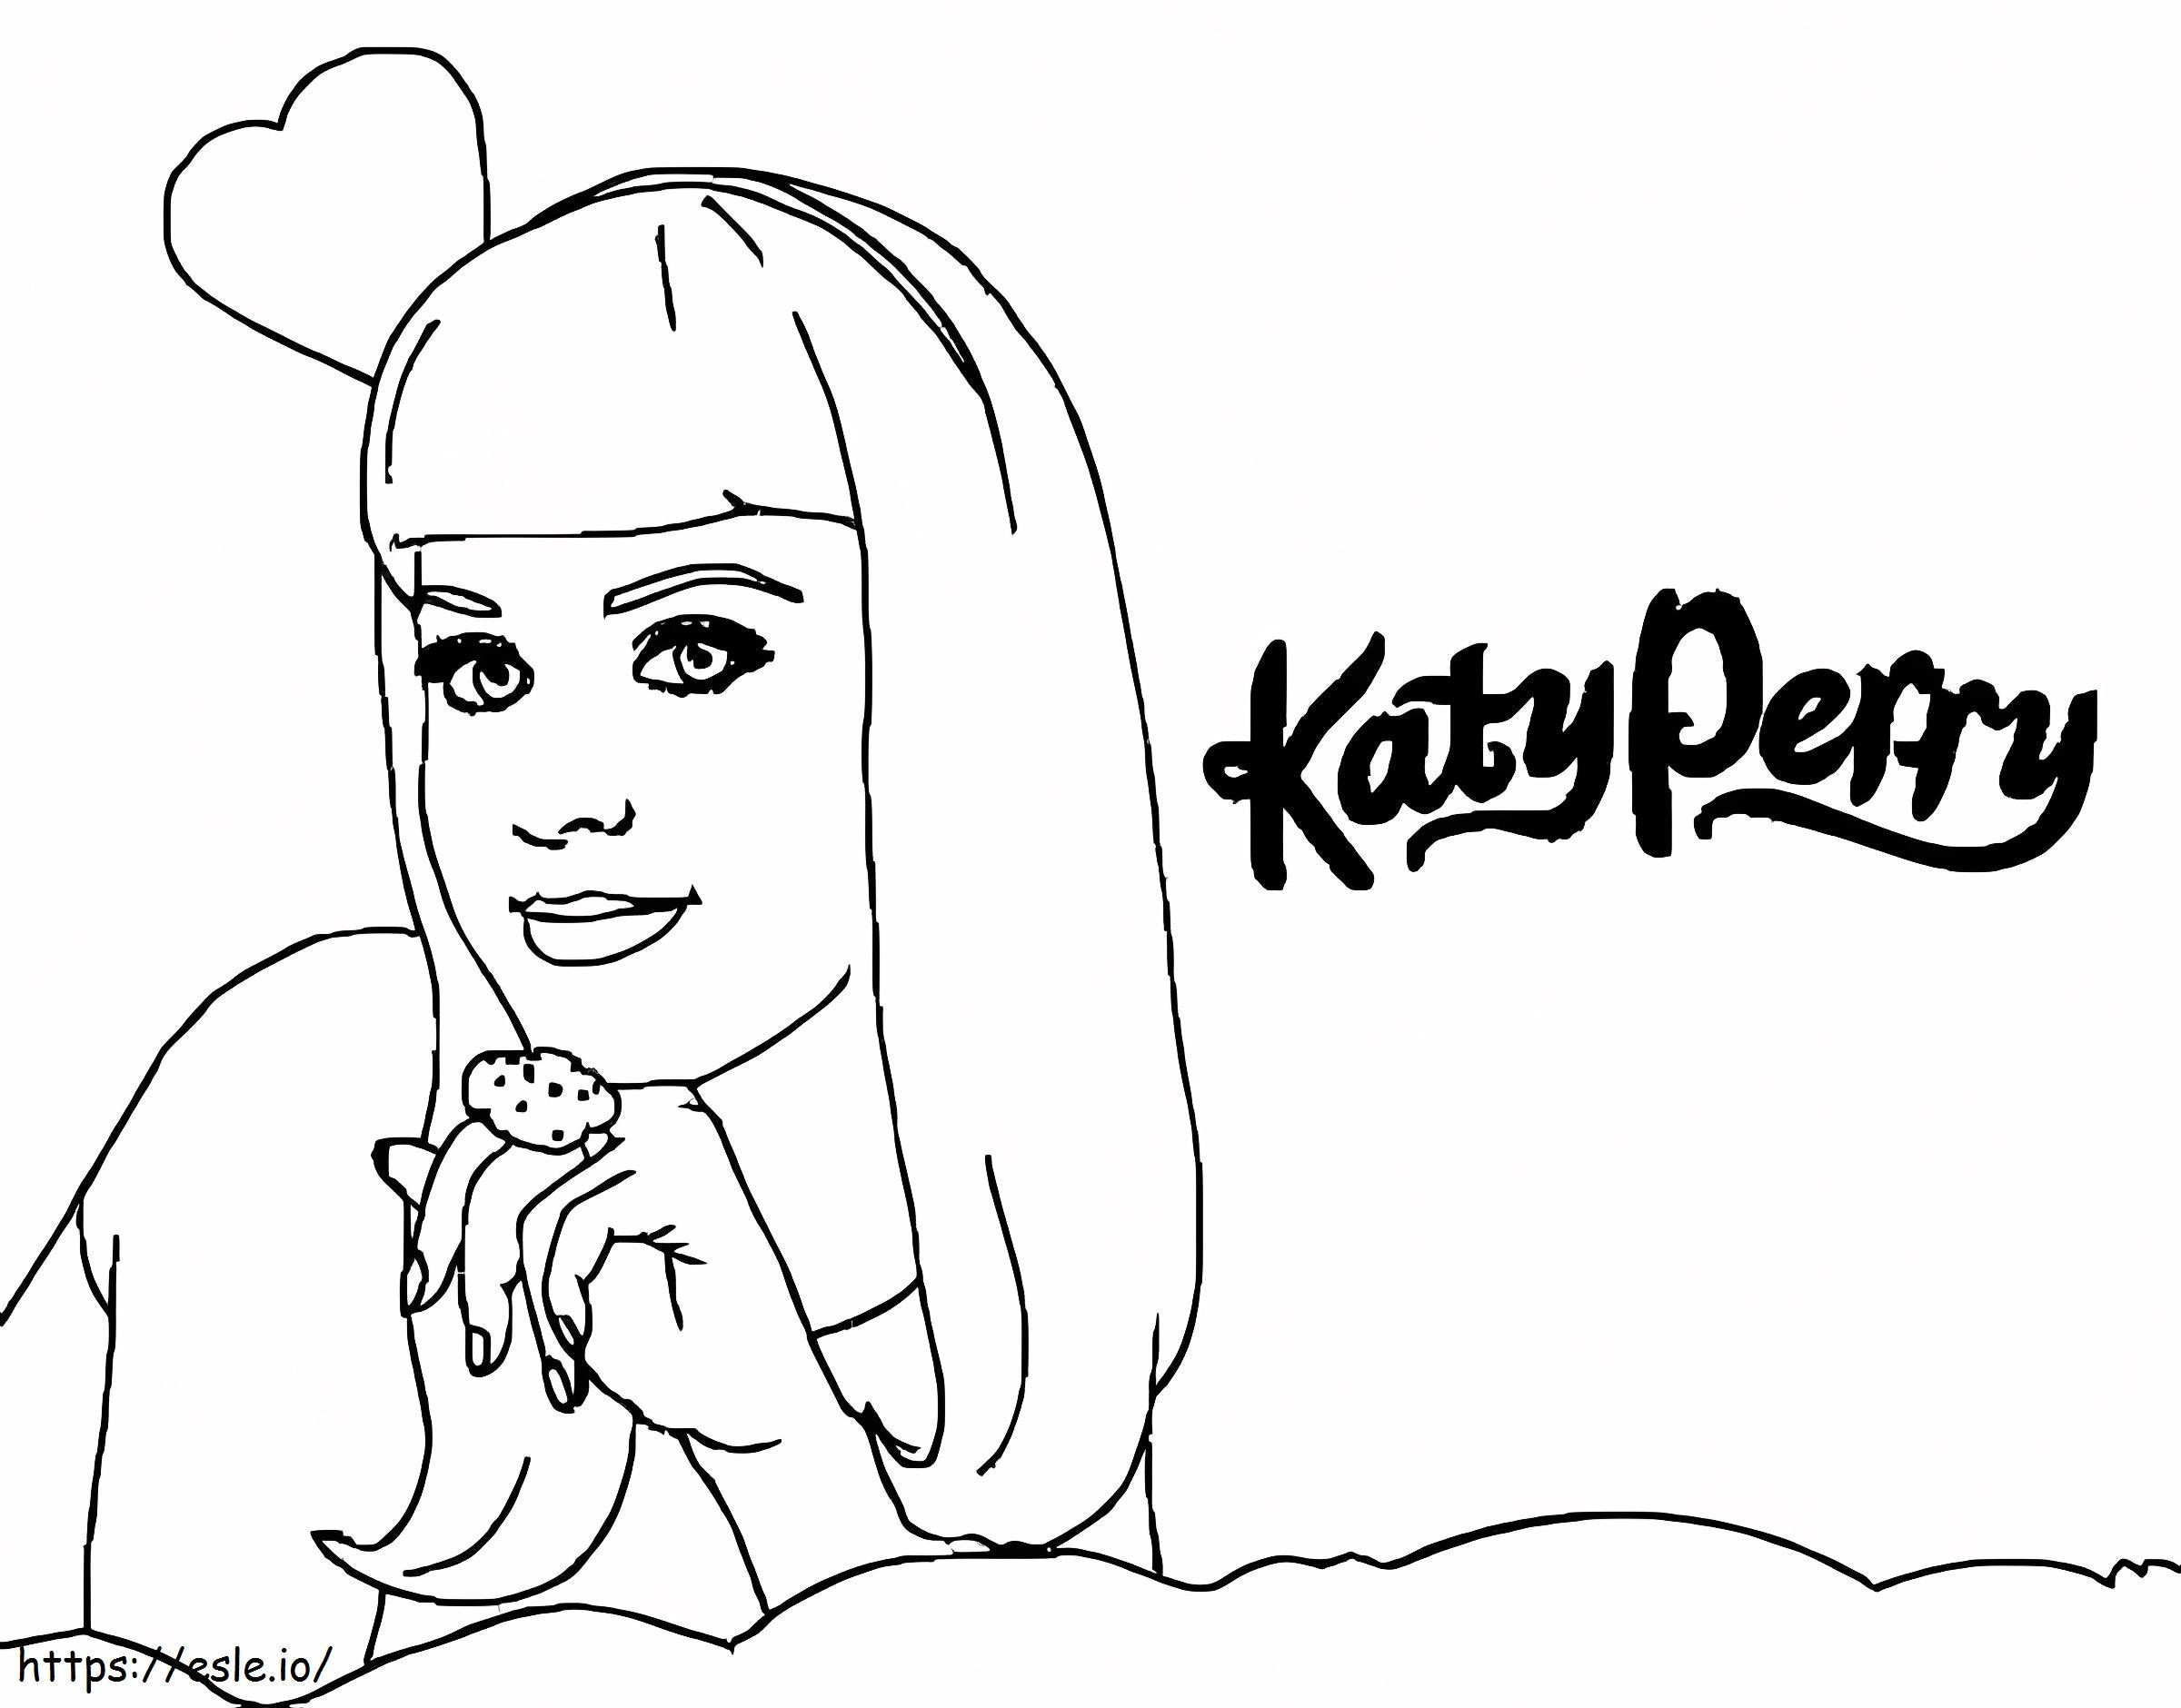 Celebra cântăreață Katy Perry de colorat